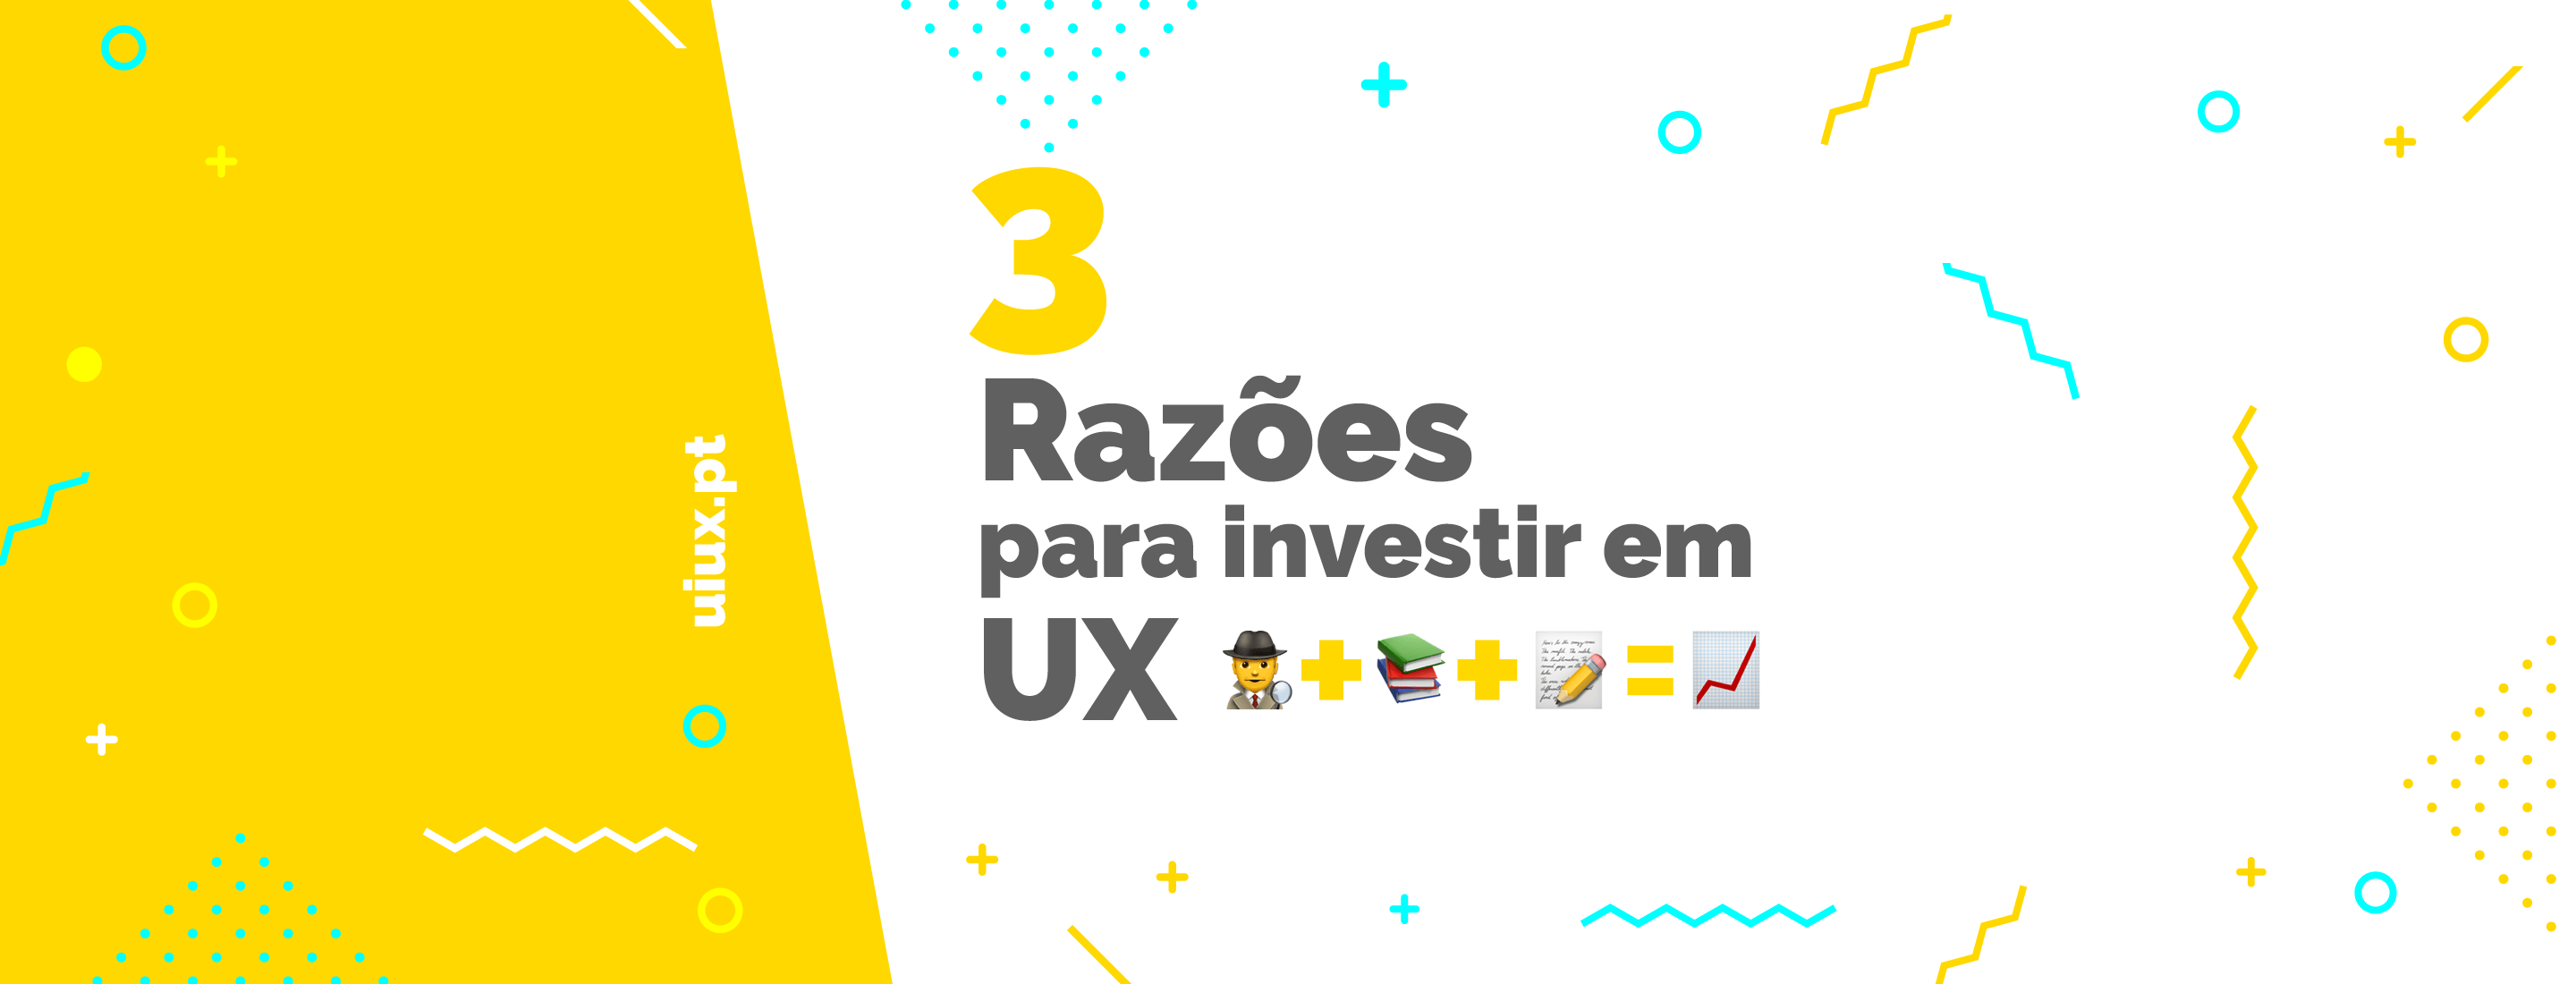 3 Razões para investir em UX